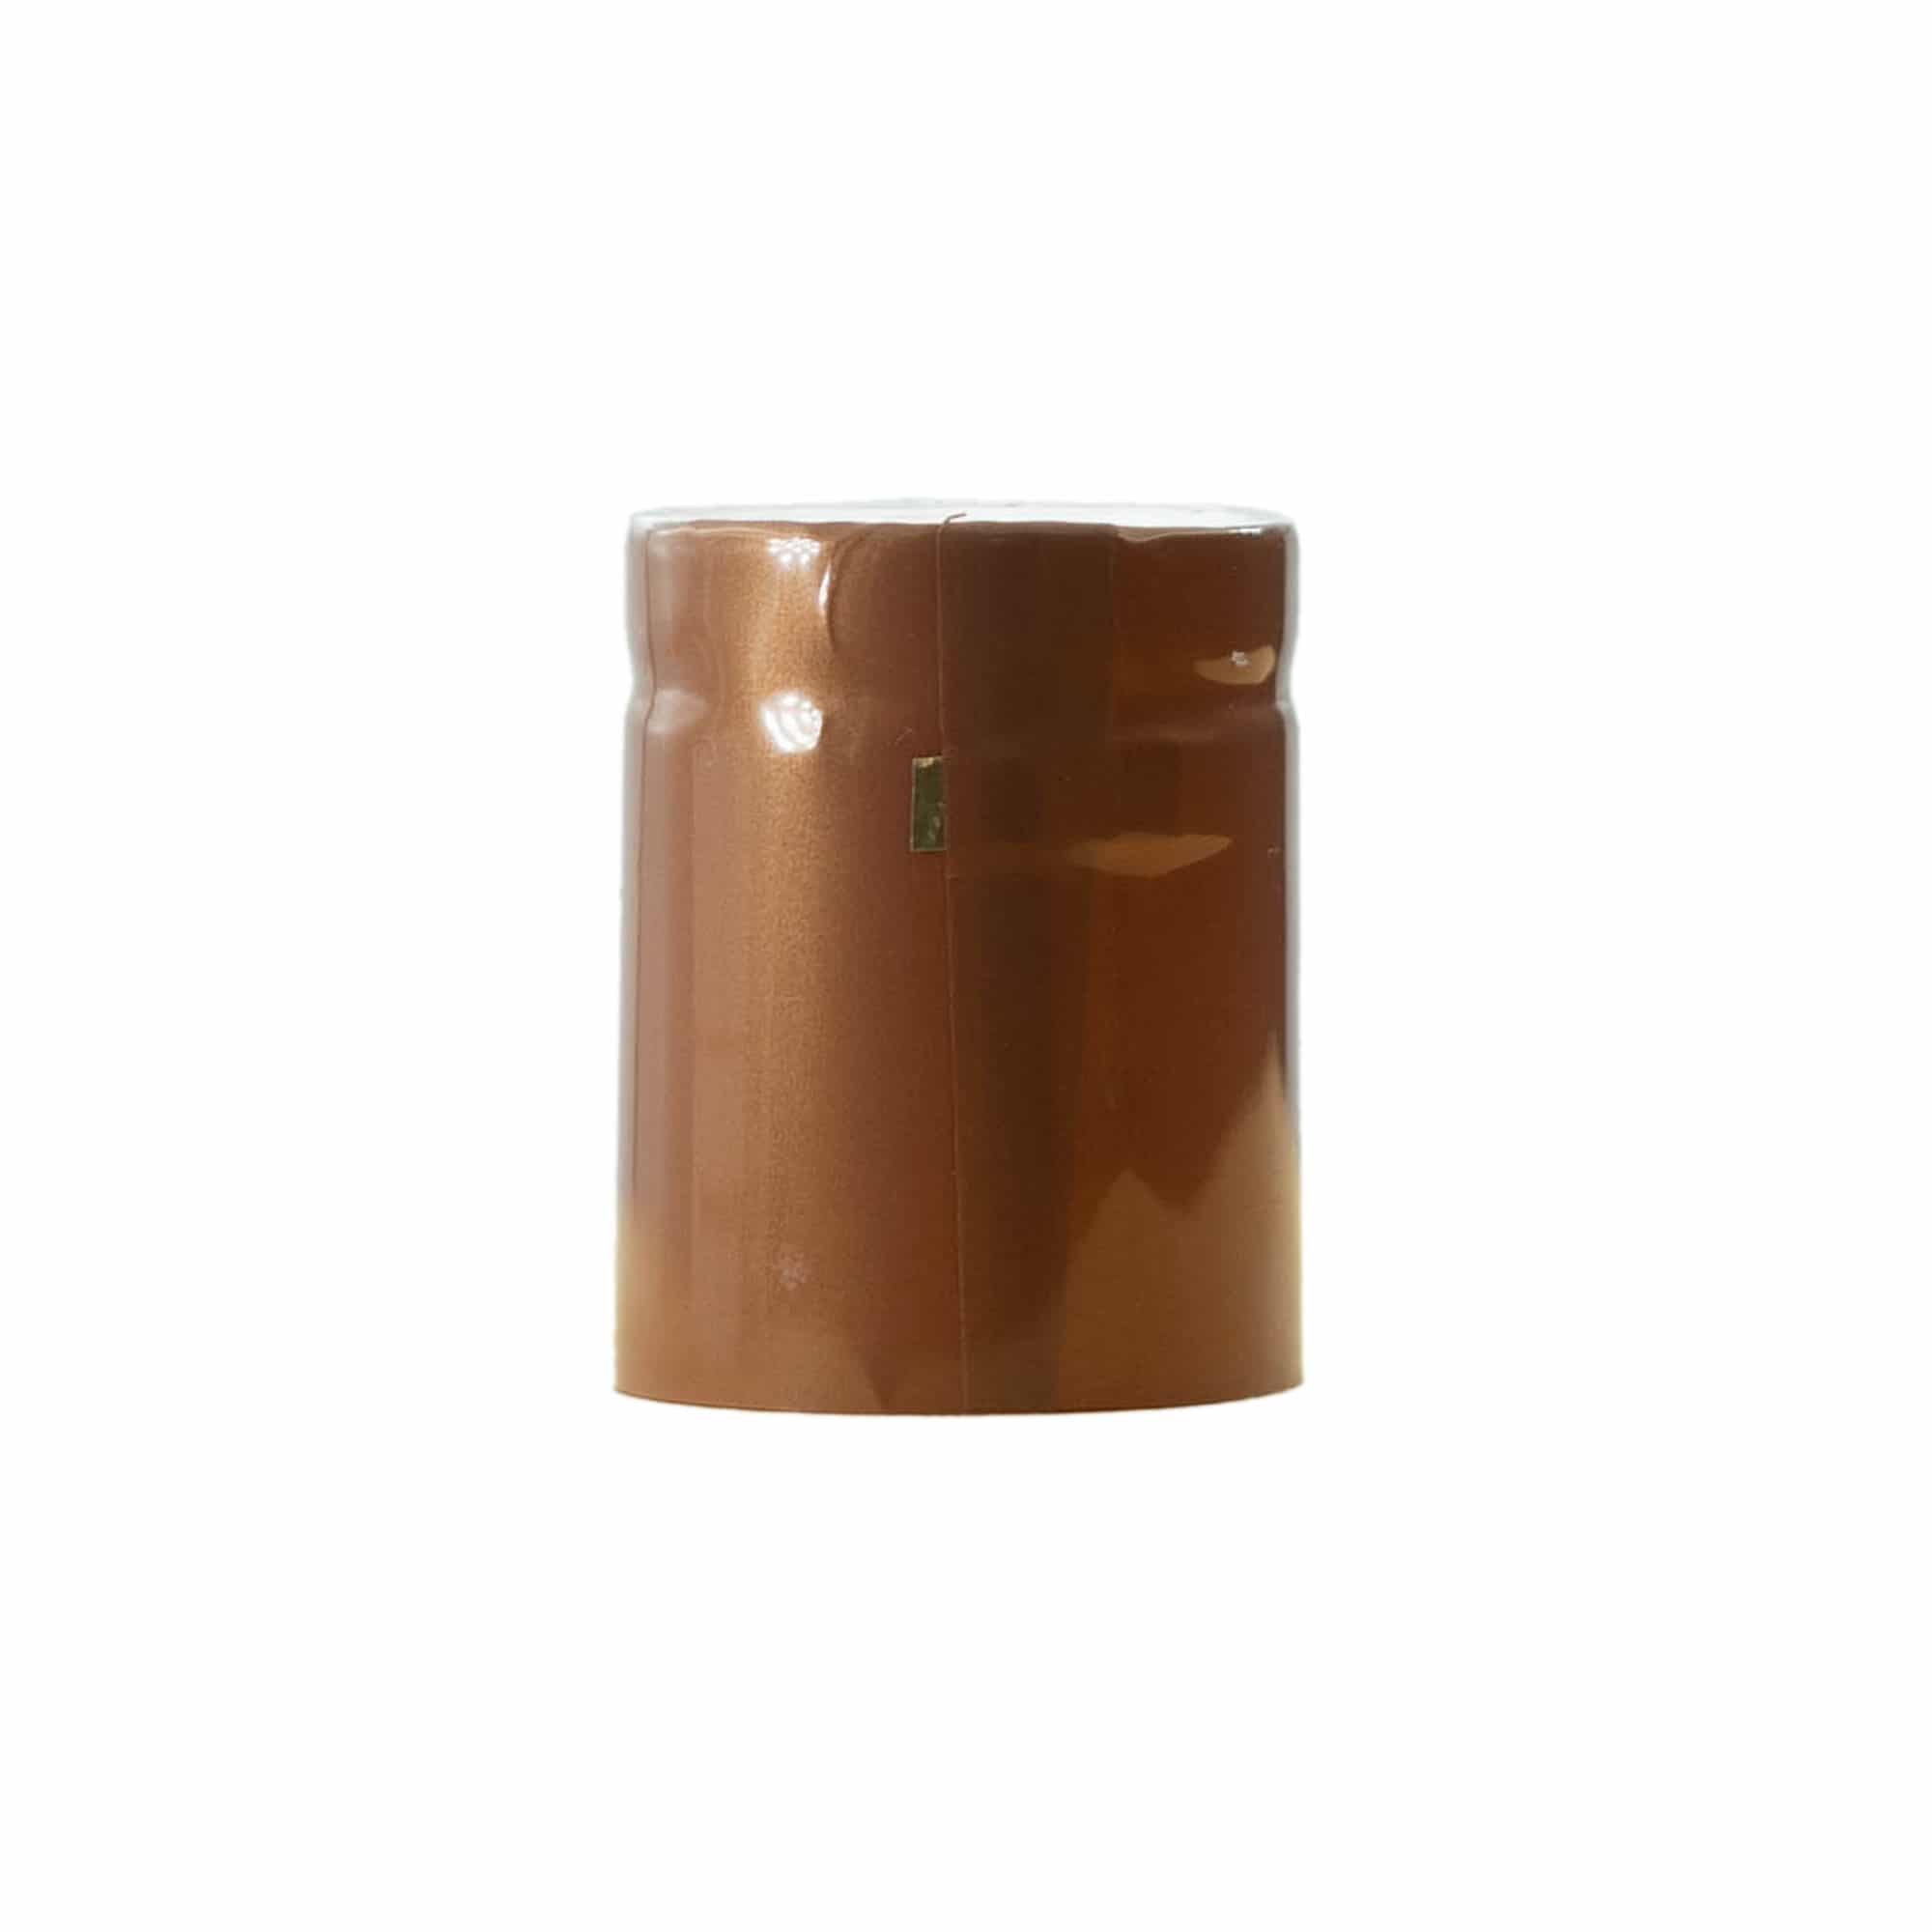 Cápsula termoencogible 32x41, plástico de PVC, bronce